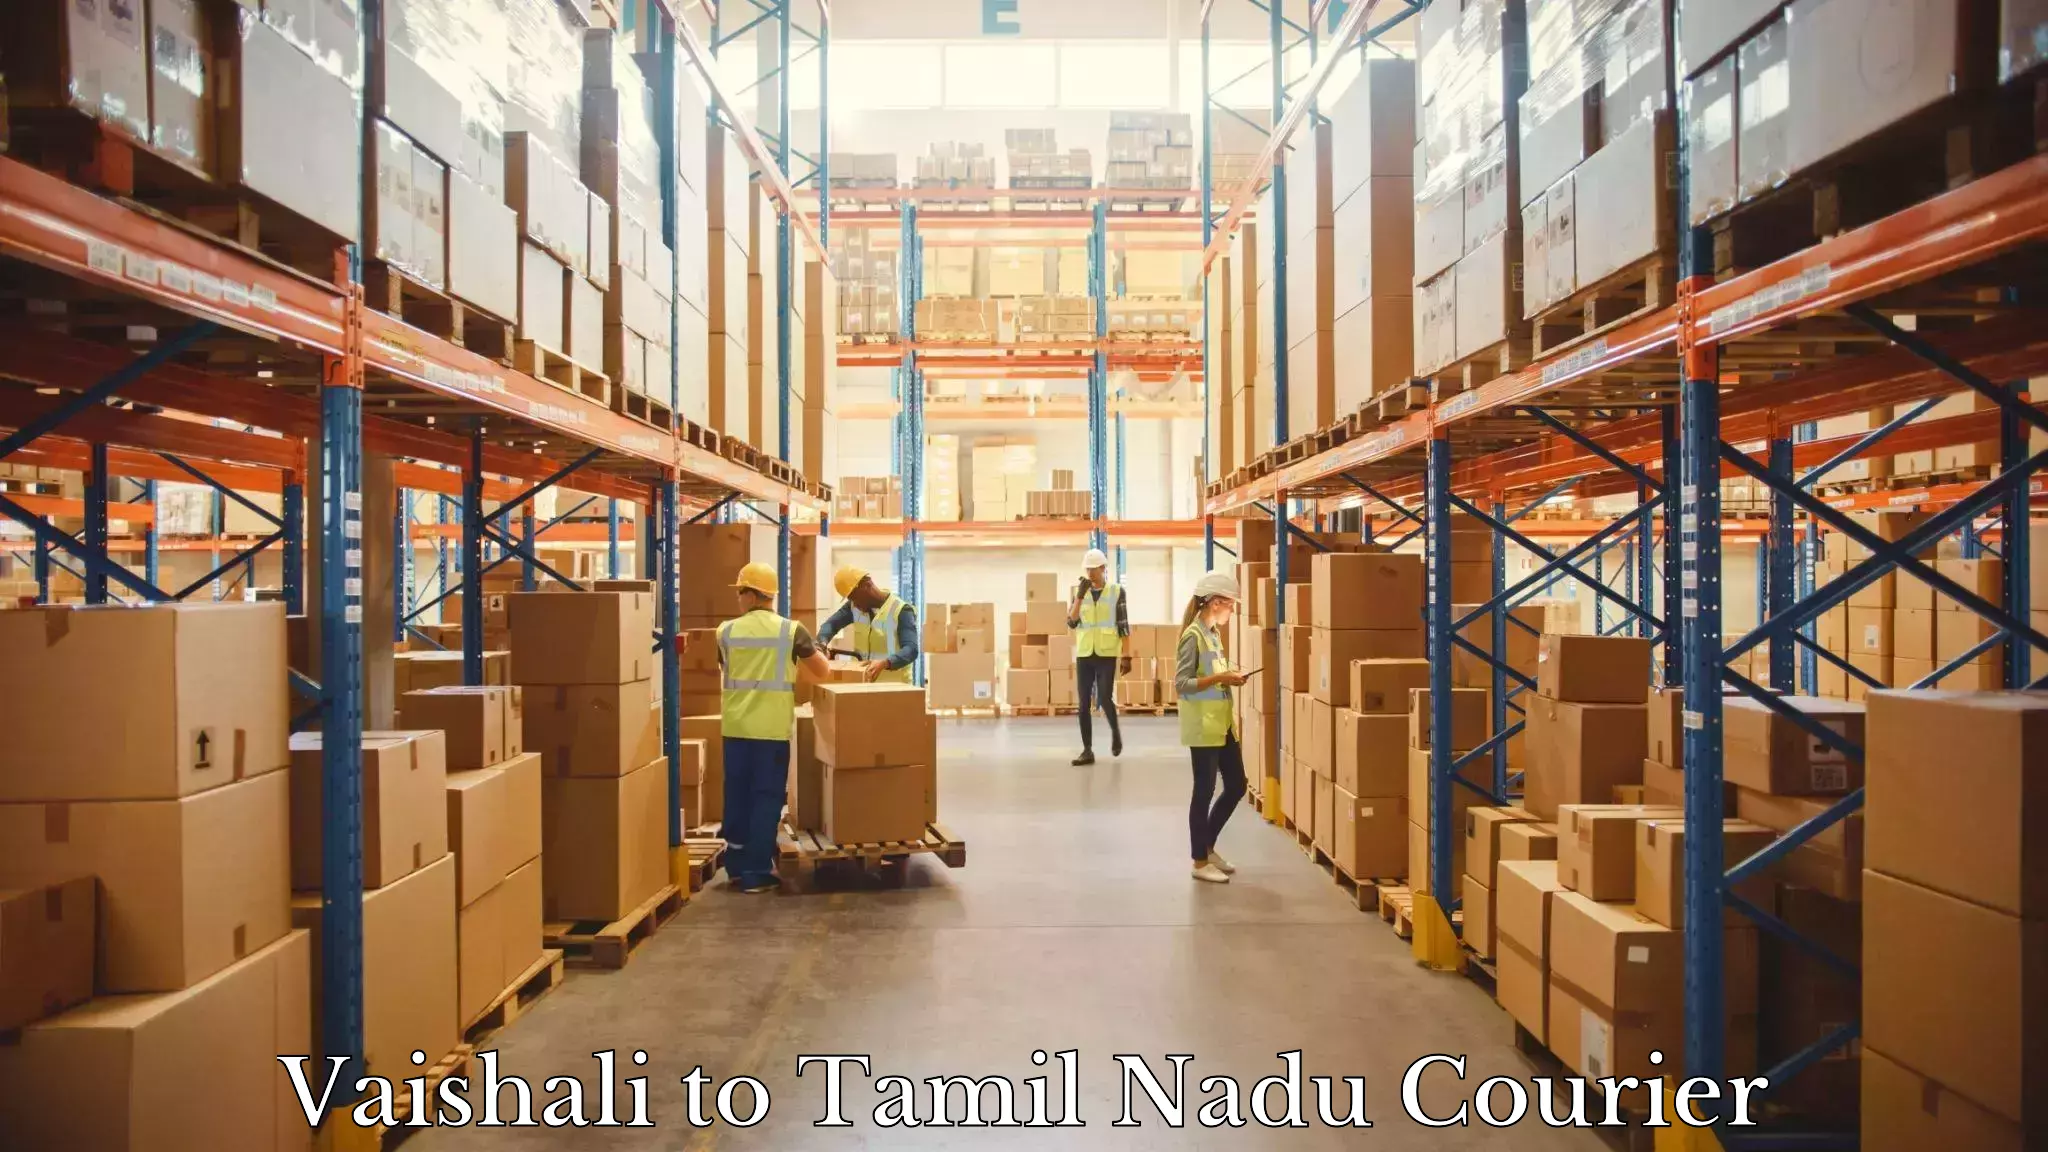 Efficient freight service Vaishali to Tamil Nadu